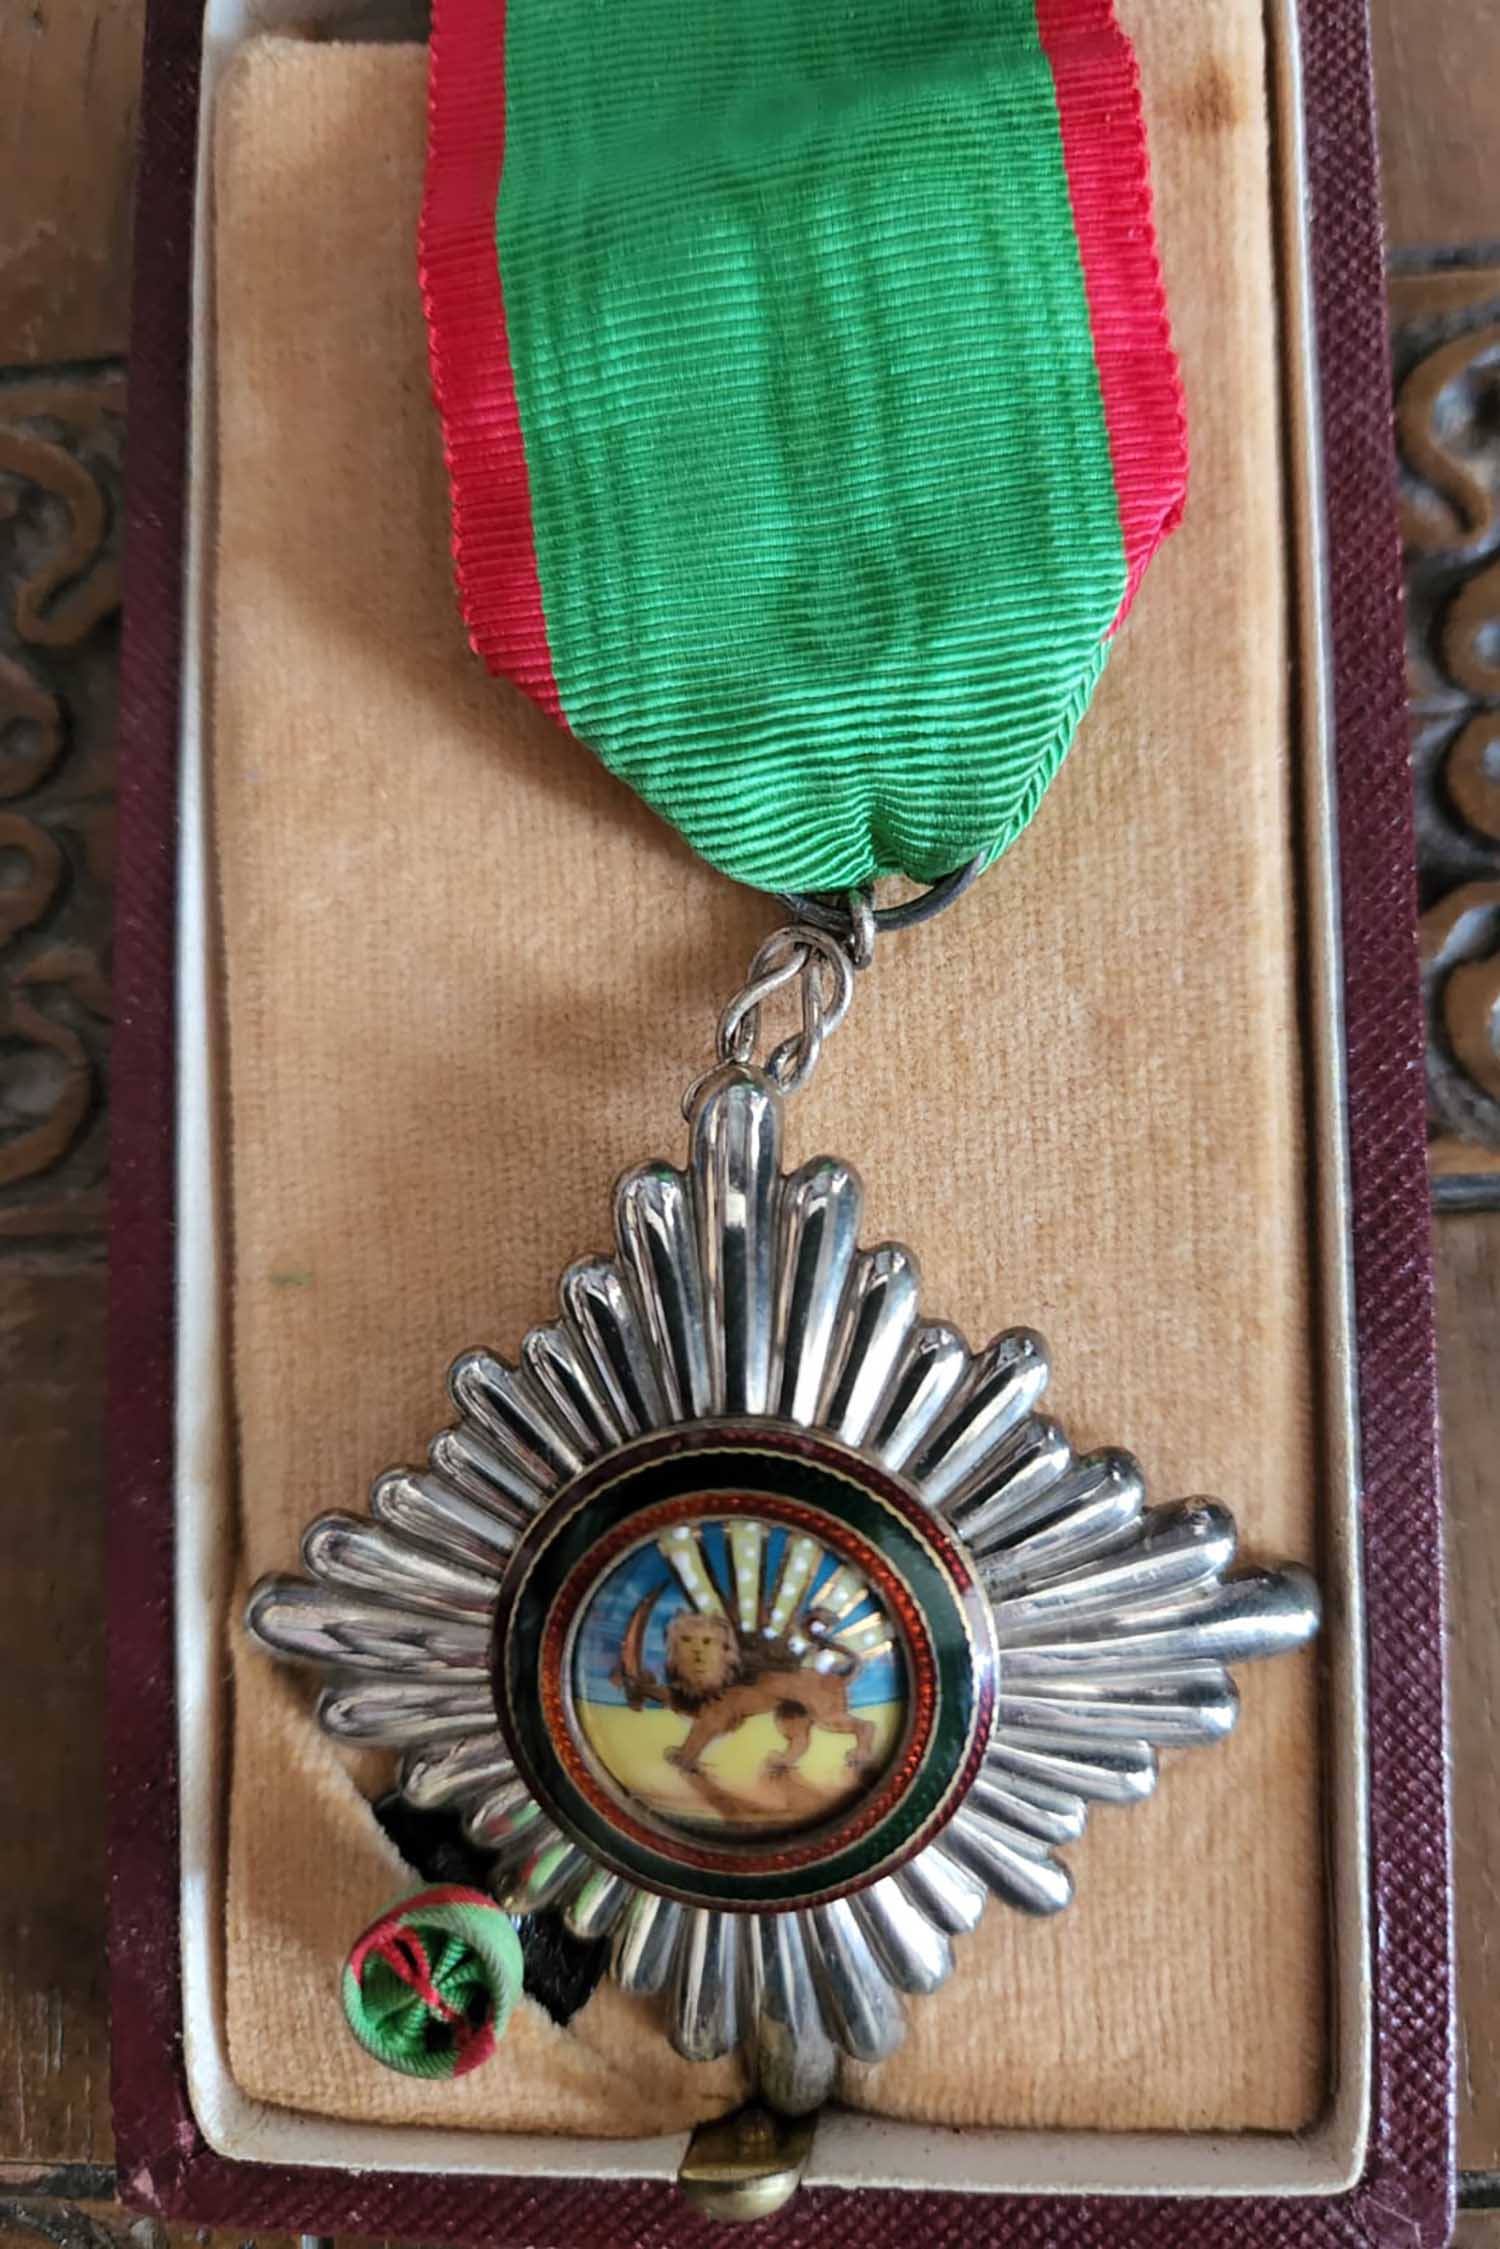 מדליית הוקרה מהשאה האיראני לפרופ' מוסא יודעים (צילום: אלבום פרטי)